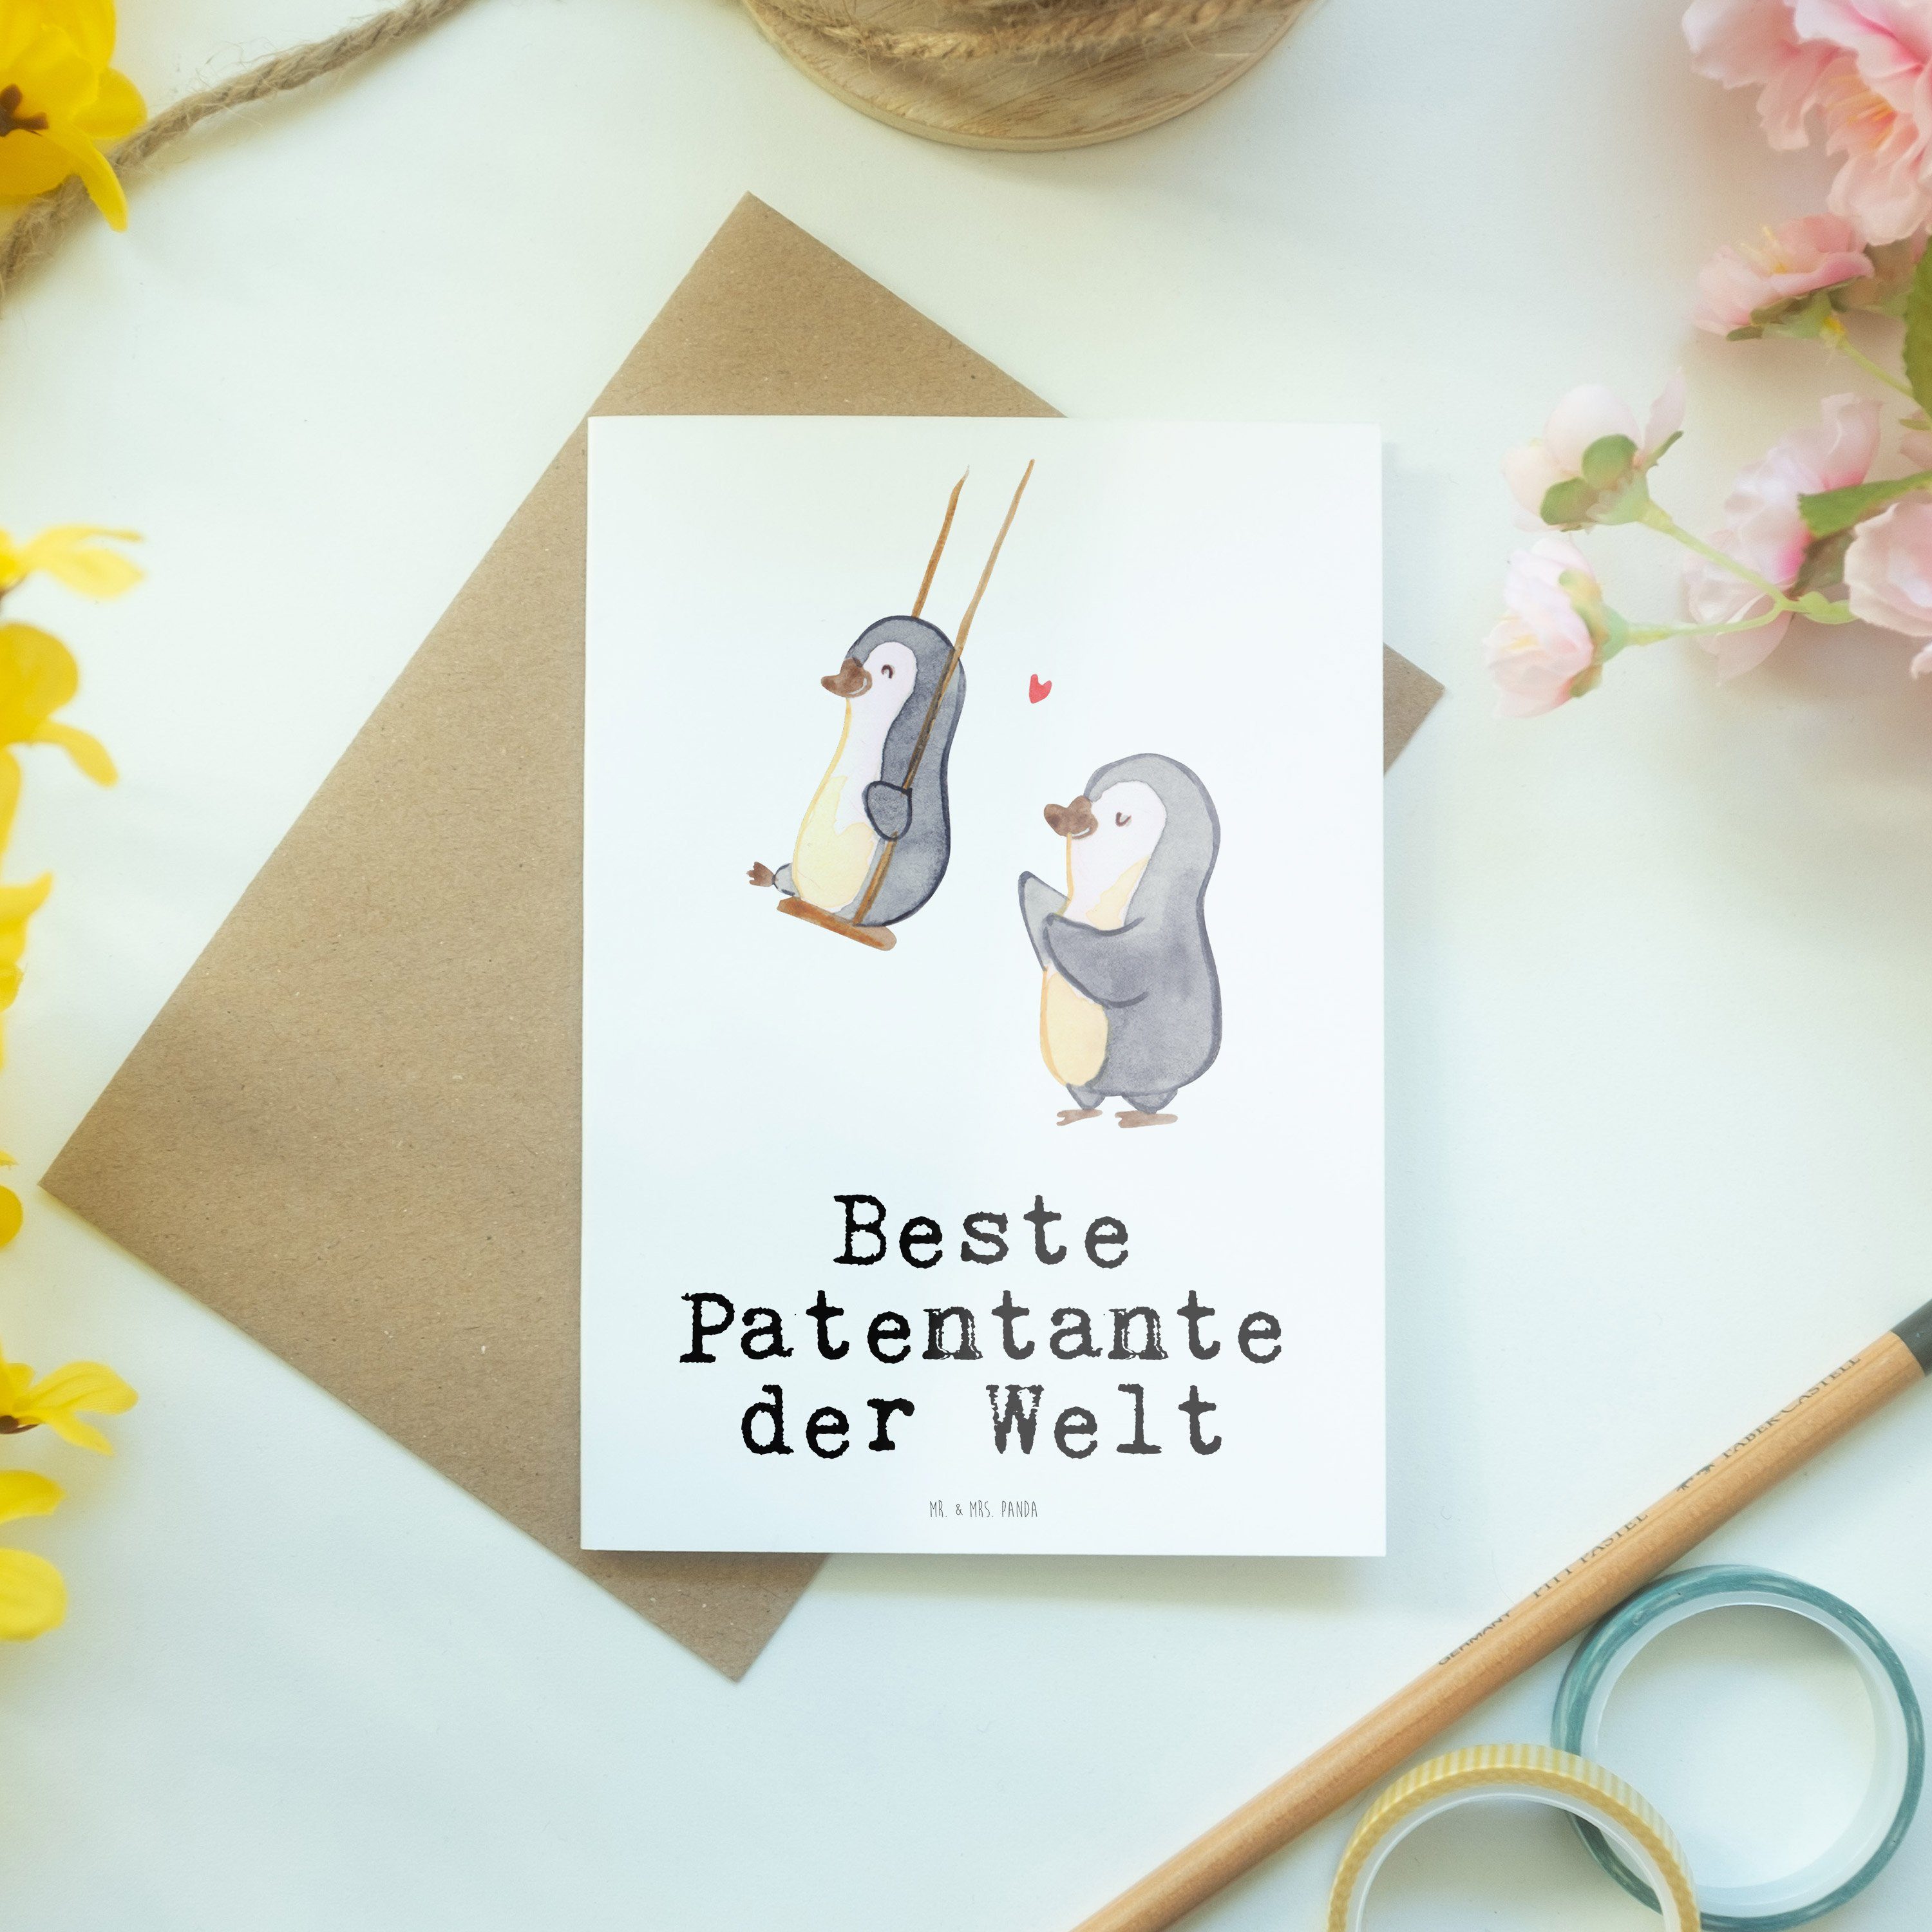 Mr. & Mrs. Panda Patentante Weiß Pinguin Beste Geburtstagsgesch Welt der - Geschenk, Grußkarte 